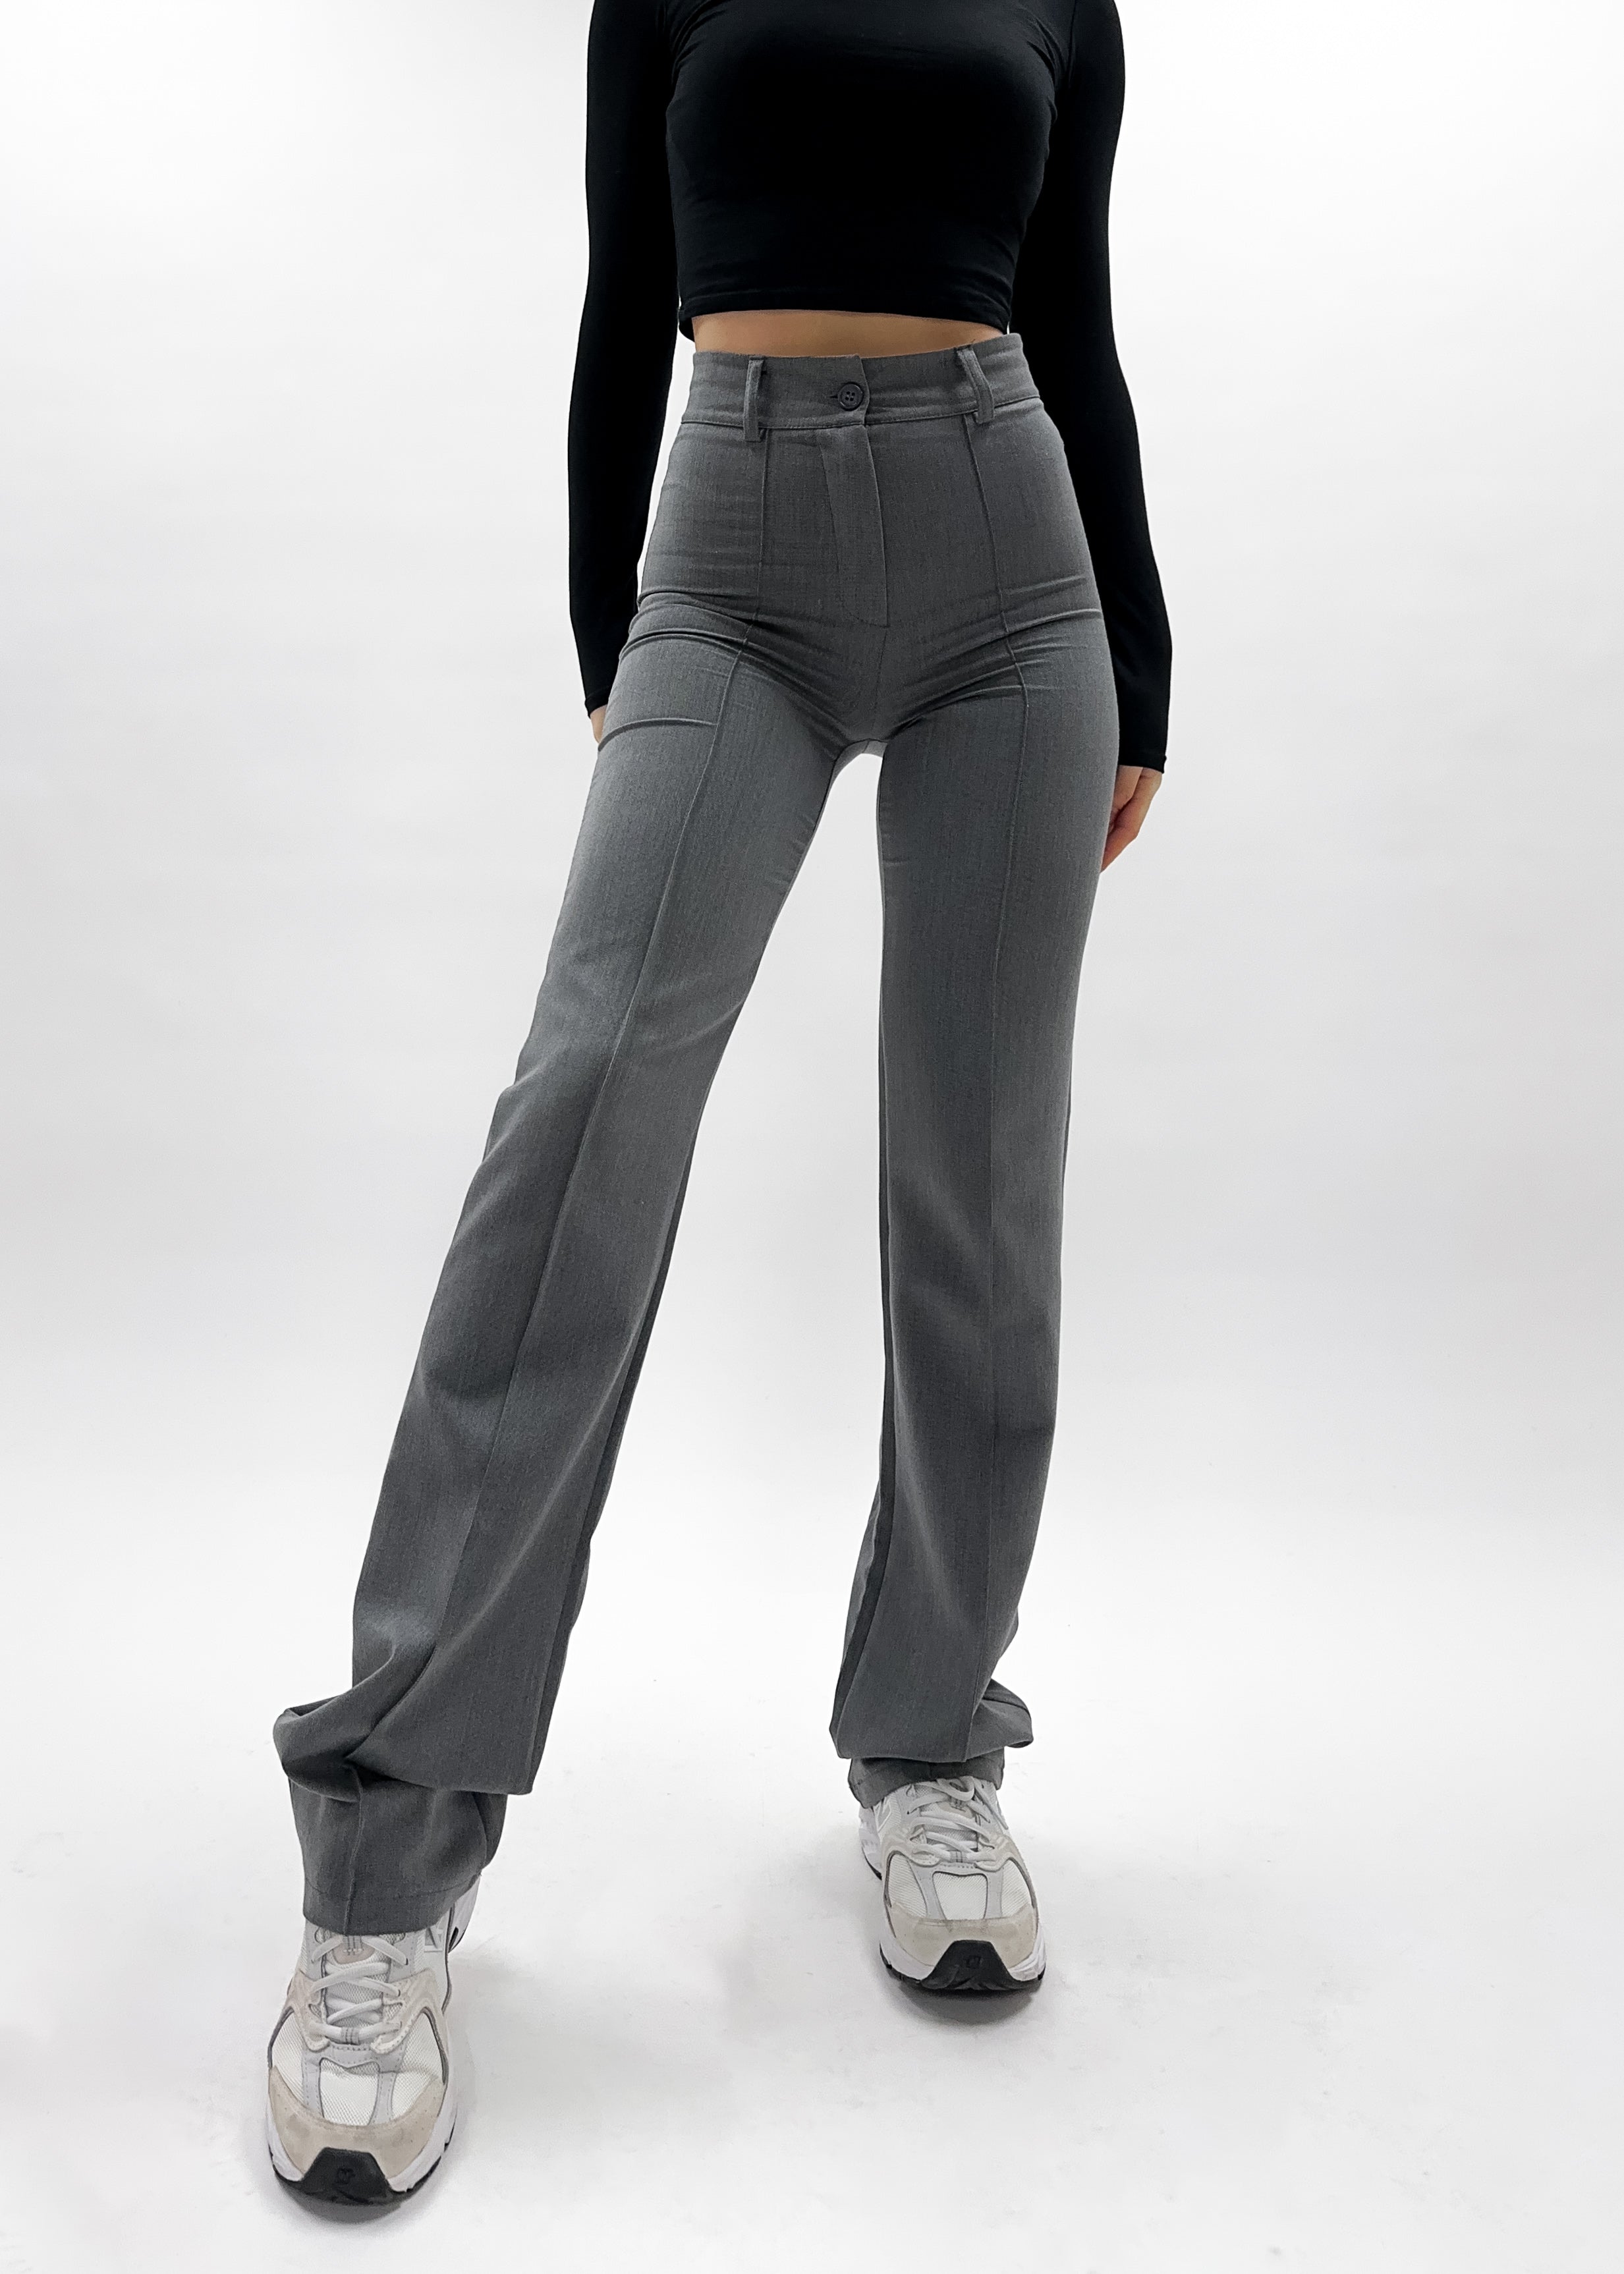 Pantalon droit avec pliage gris clair délavé (TALL)